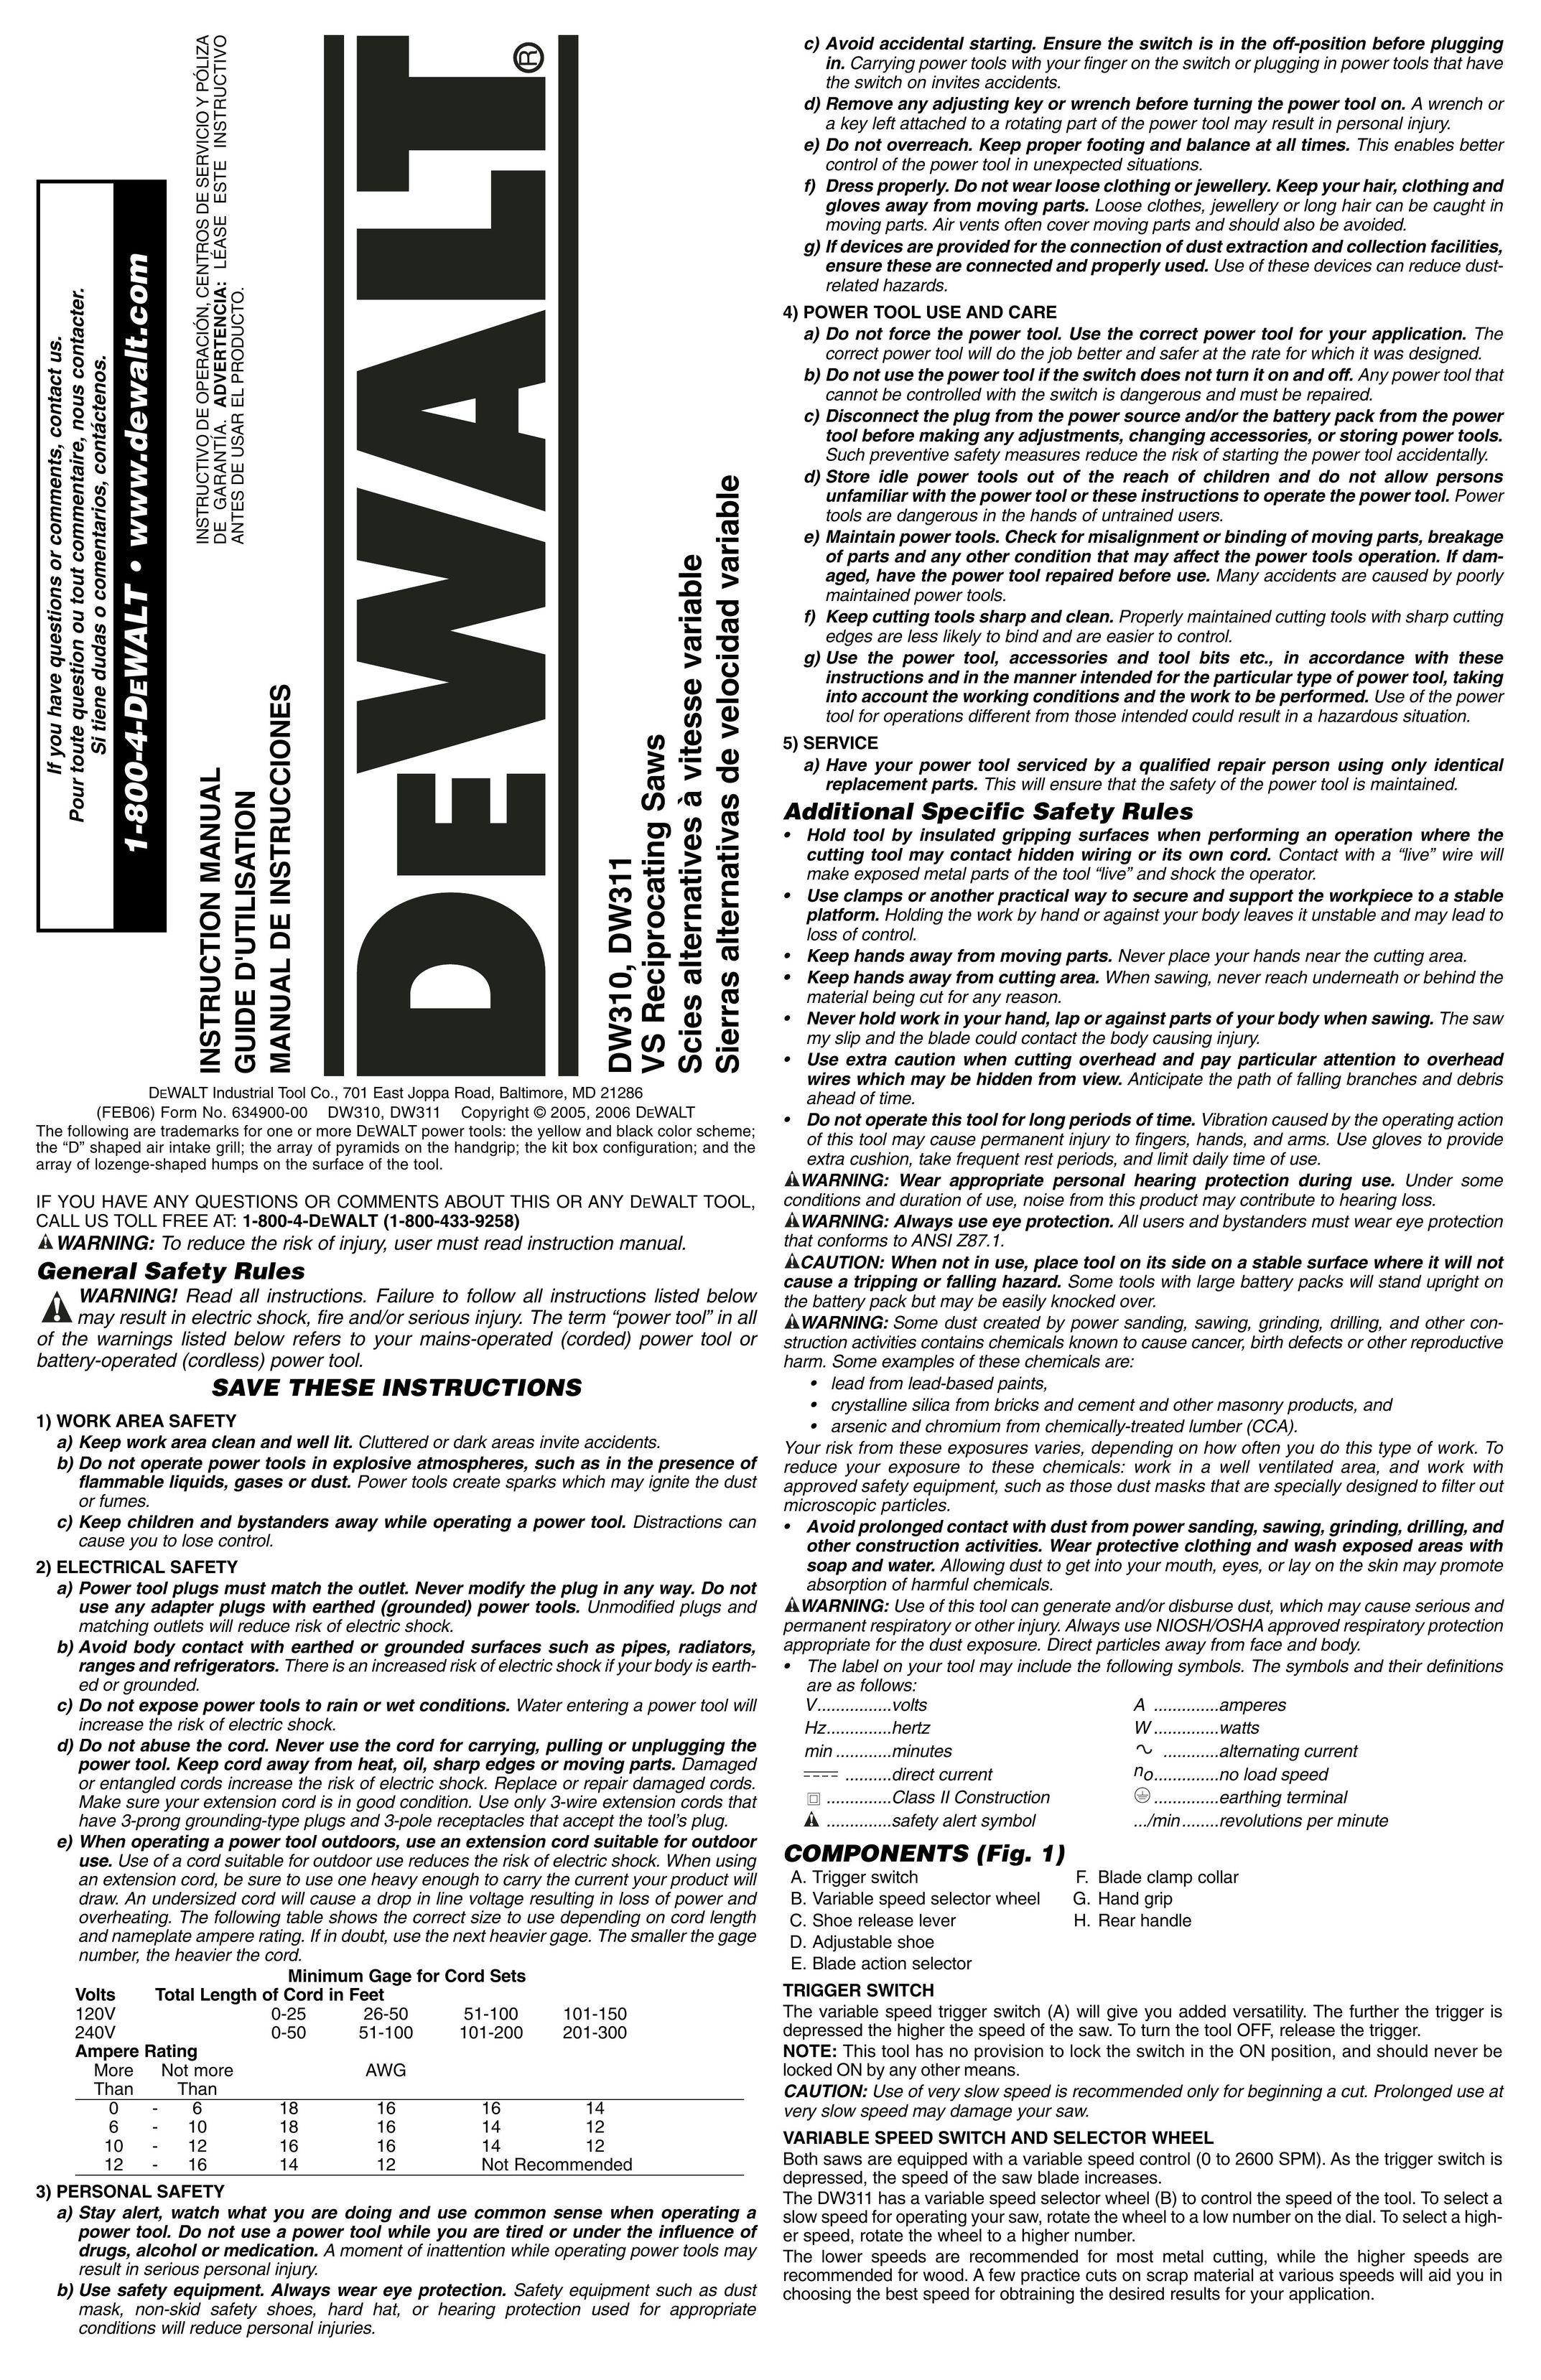 DeWalt DW311K Saw User Manual